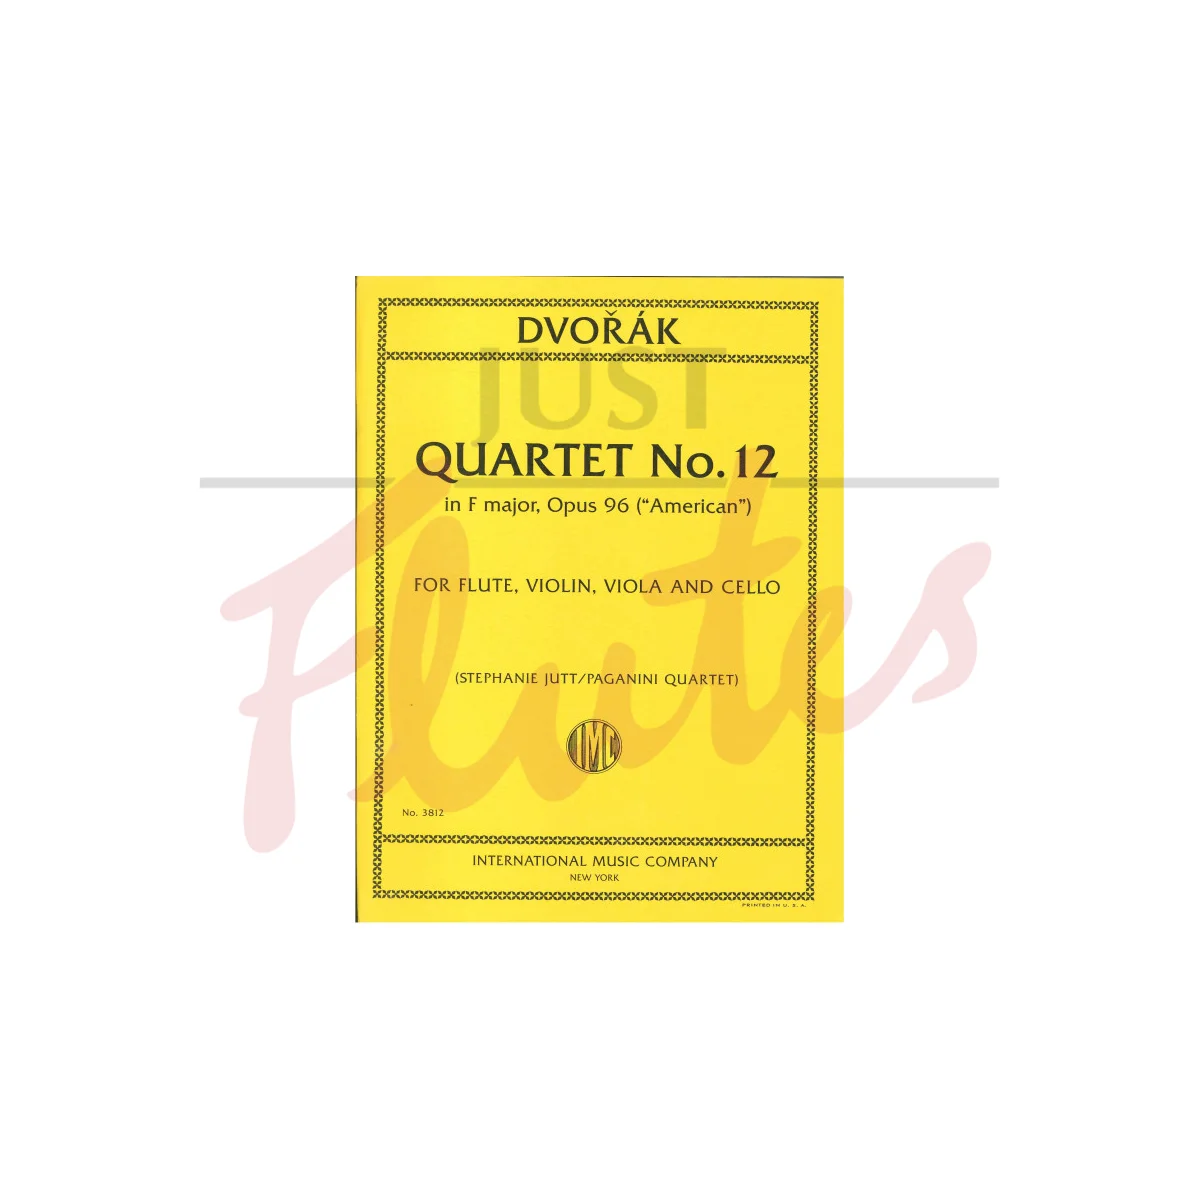 Quartet No. 12 in F major for Flute, Violin, Viola and Cello